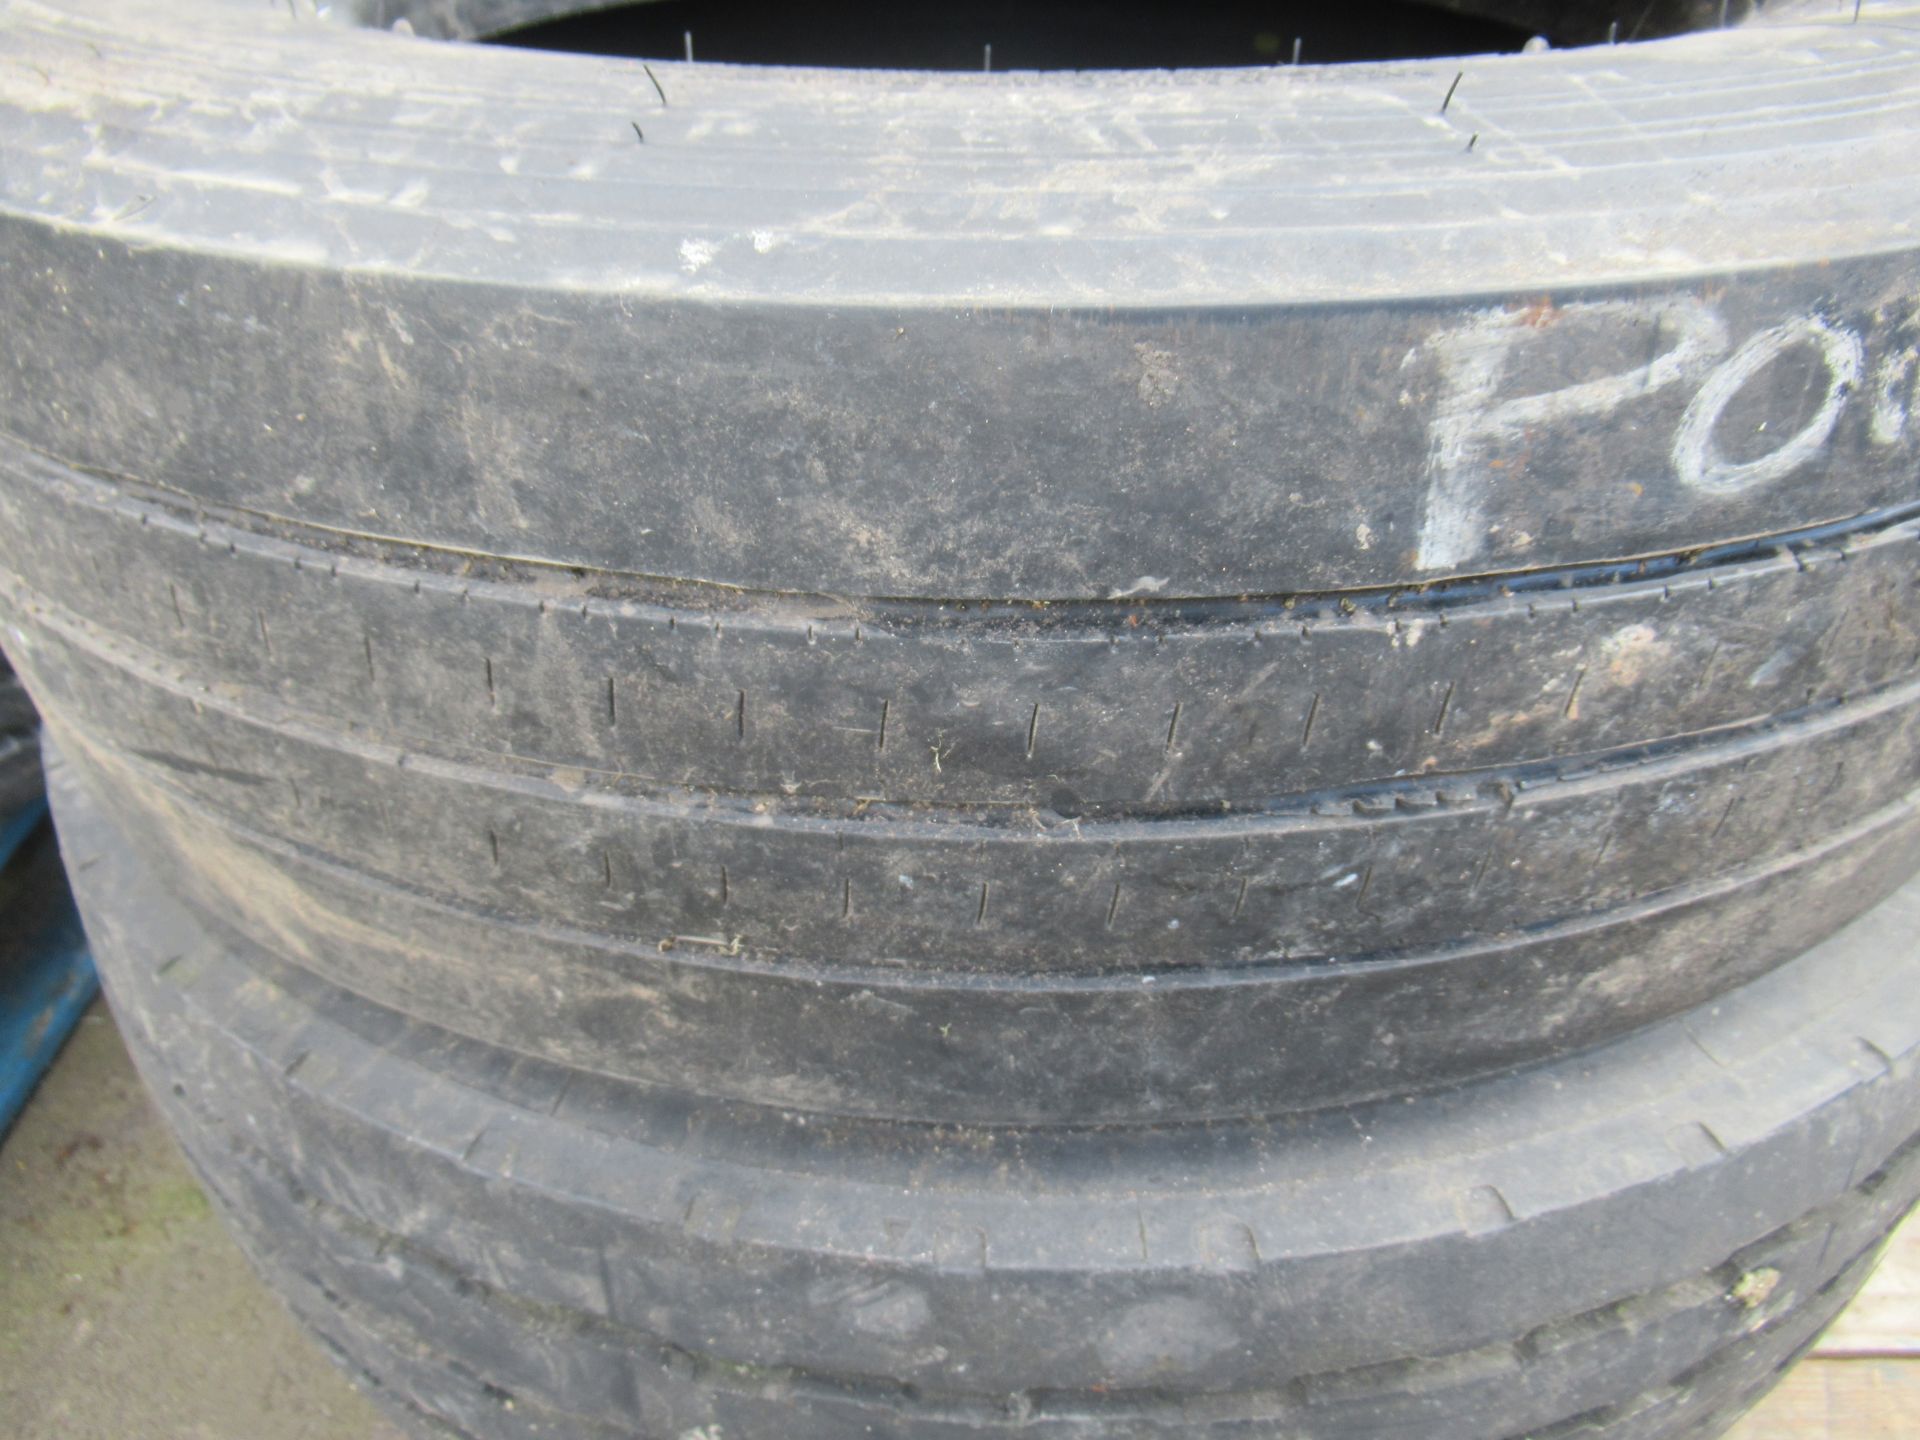 5x Partworn Tyres ( 285/70R/19.5, 245/70R/19.5, 245/70R/19.5, 285/70R/19.5, 245/70R/19.5) - Image 4 of 7